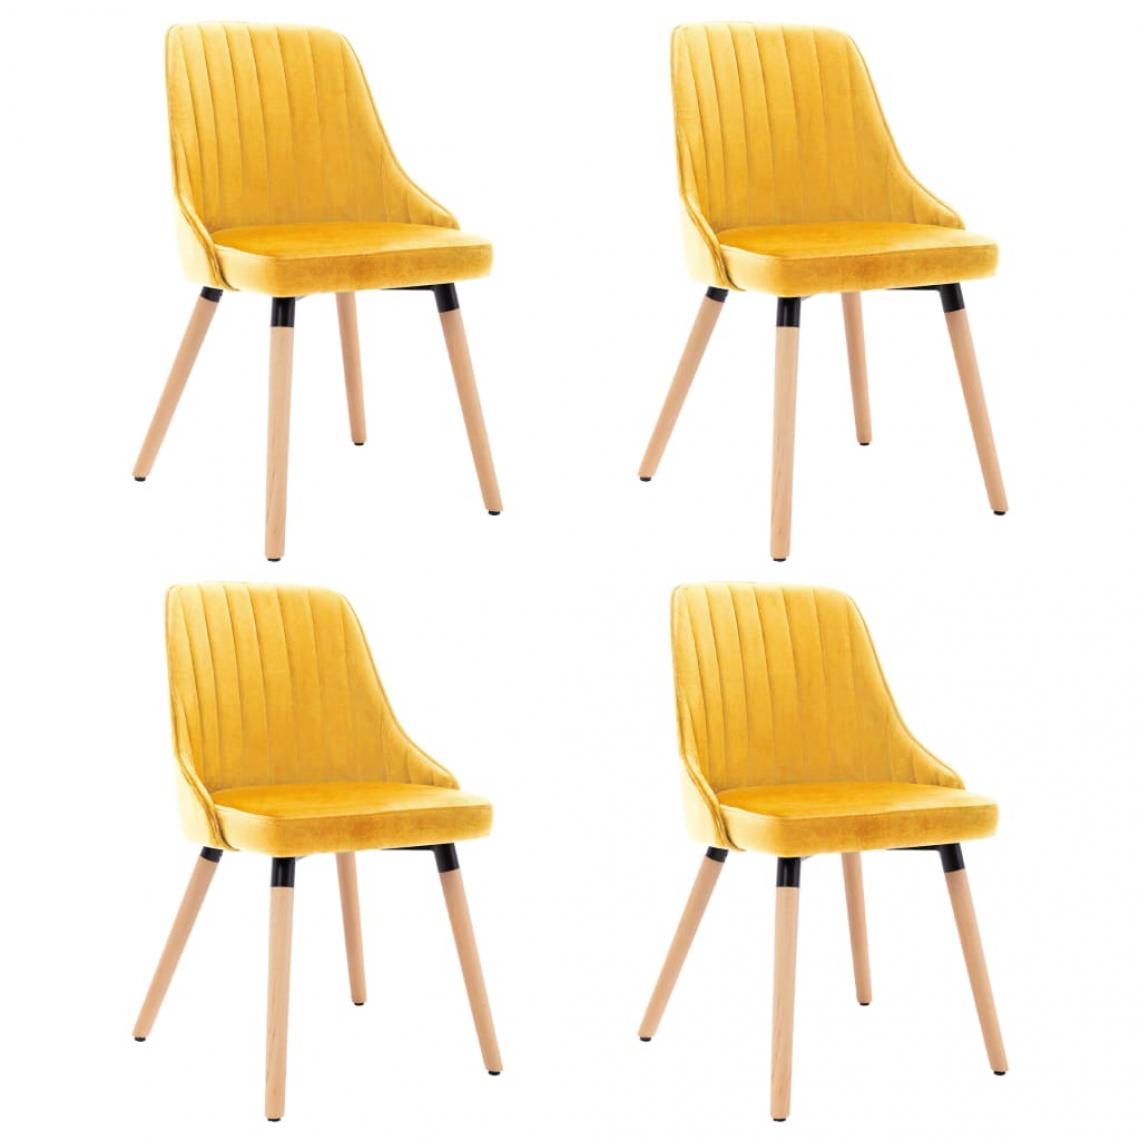 Decoshop26 - Lot de 4 chaises de salle à manger cuisine design moderne velours jaune CDS021663 - Chaises